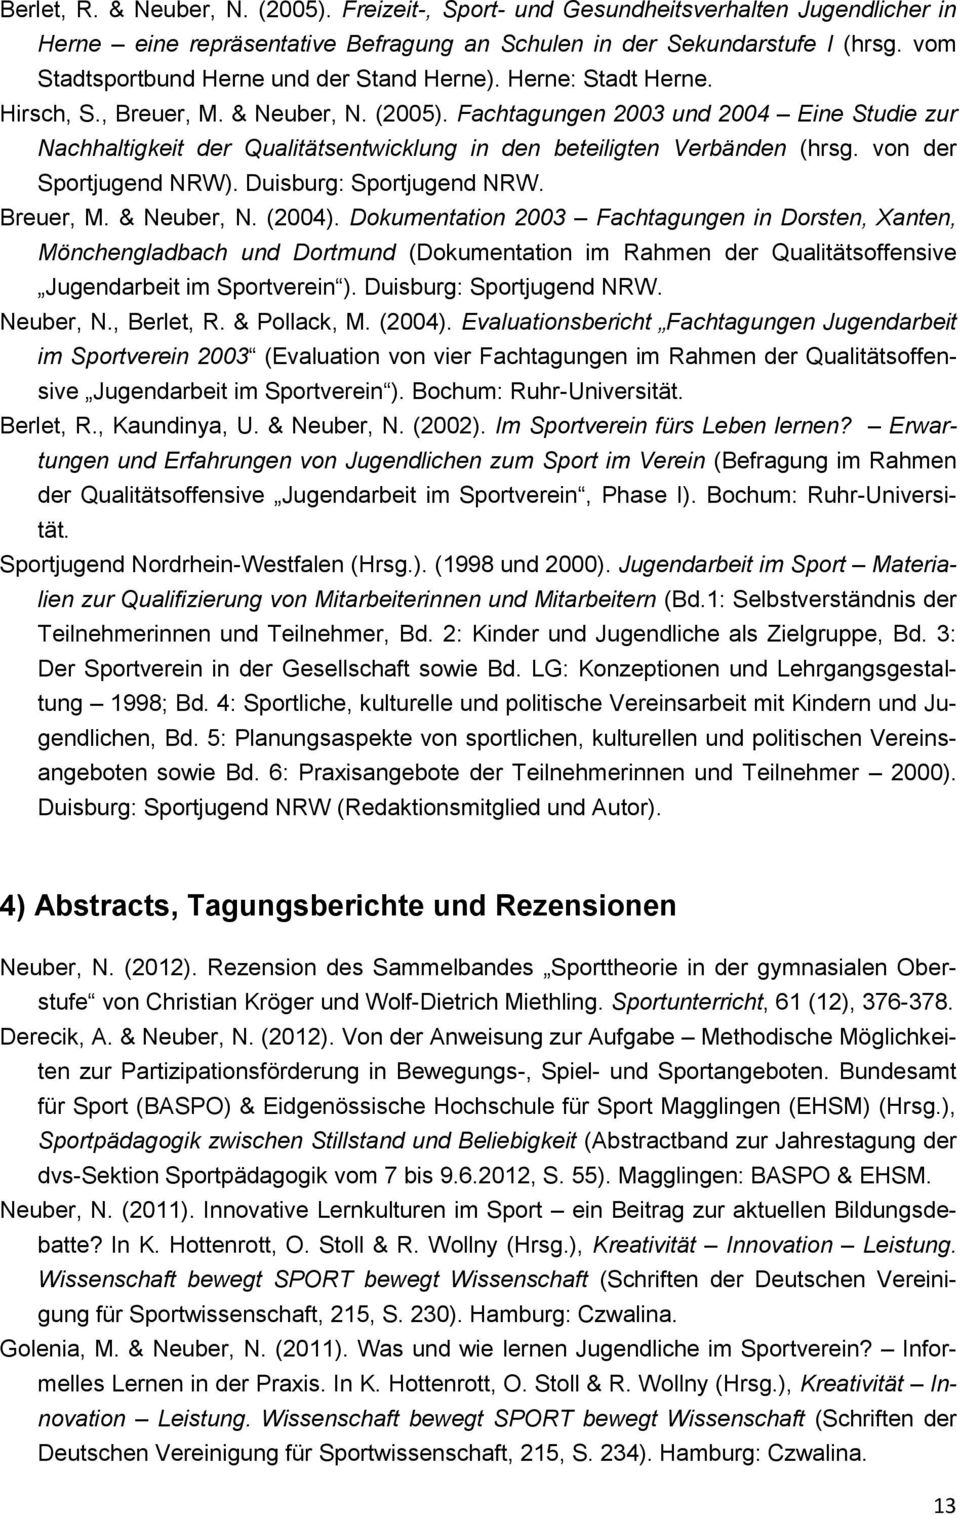 Fachtagungen 2003 und 2004 Eine Studie zur Nachhaltigkeit der Qualitätsentwicklung in den beteiligten Verbänden (hrsg. von der Sportjugend NRW). Duisburg: Sportjugend NRW. Breuer, M. & Neuber, N.